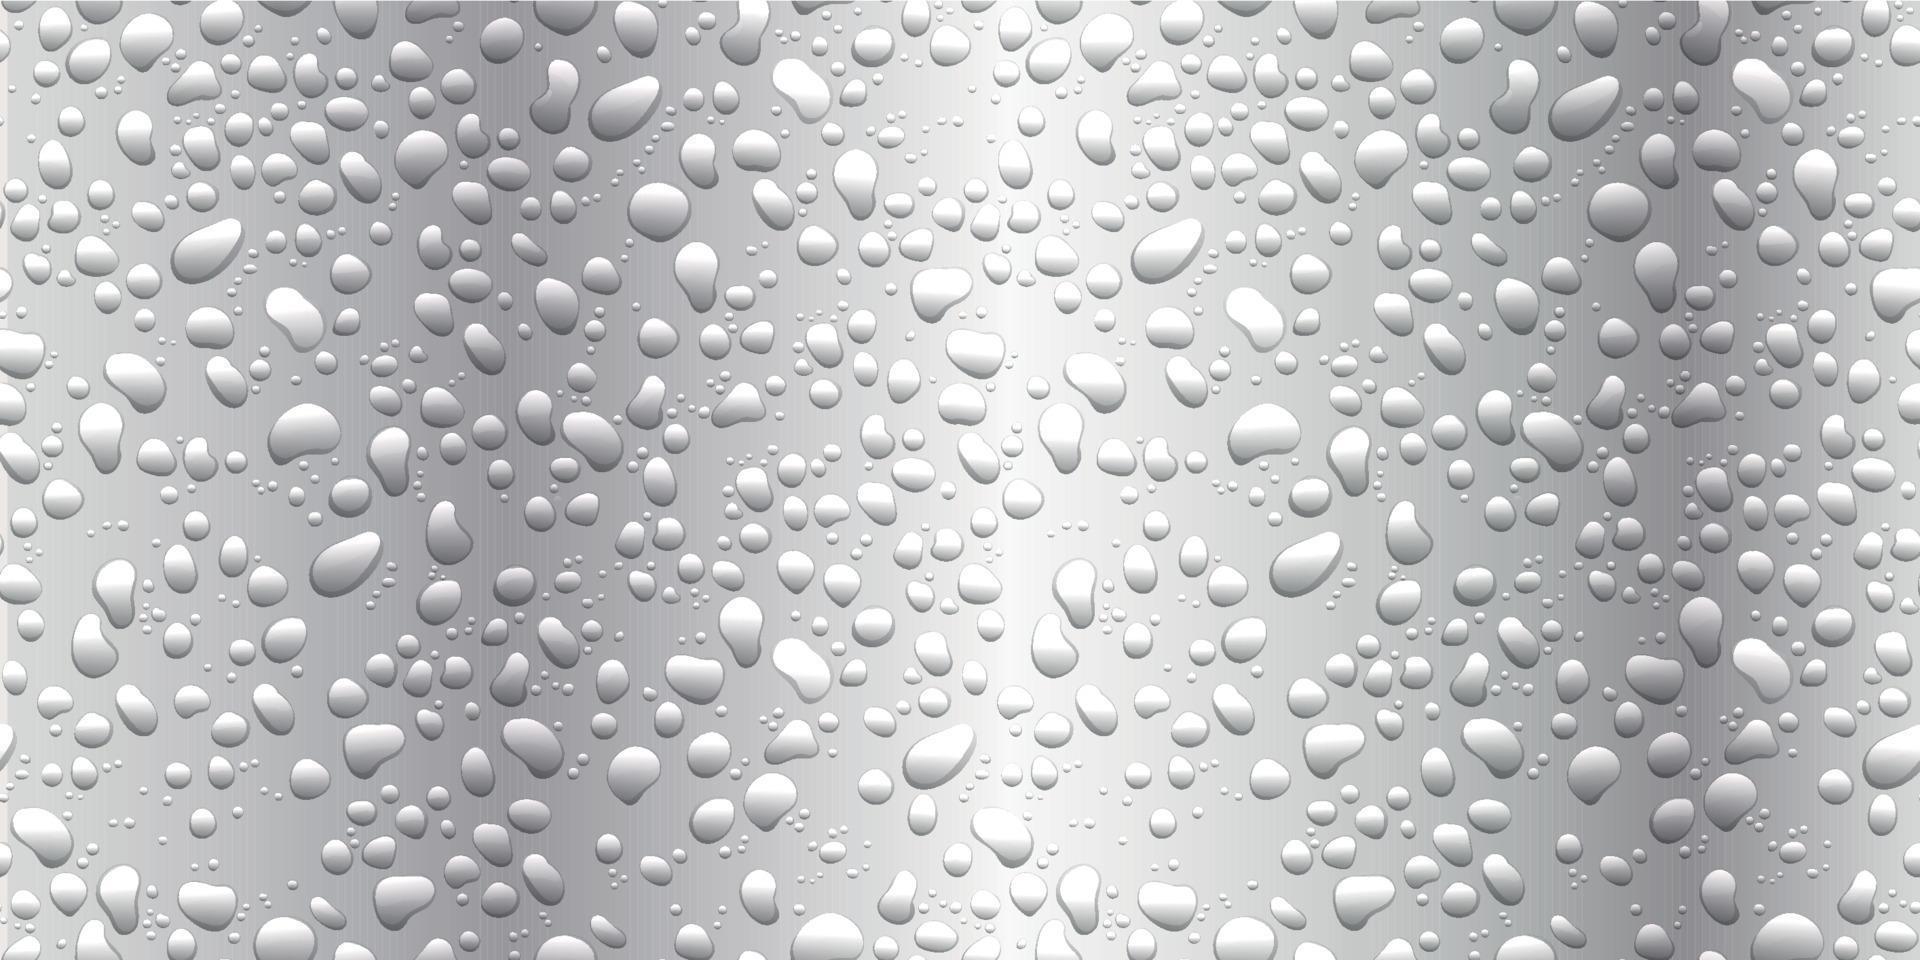 gotas de água no fundo branco. condensação de gotas de chuva pura realista vetor